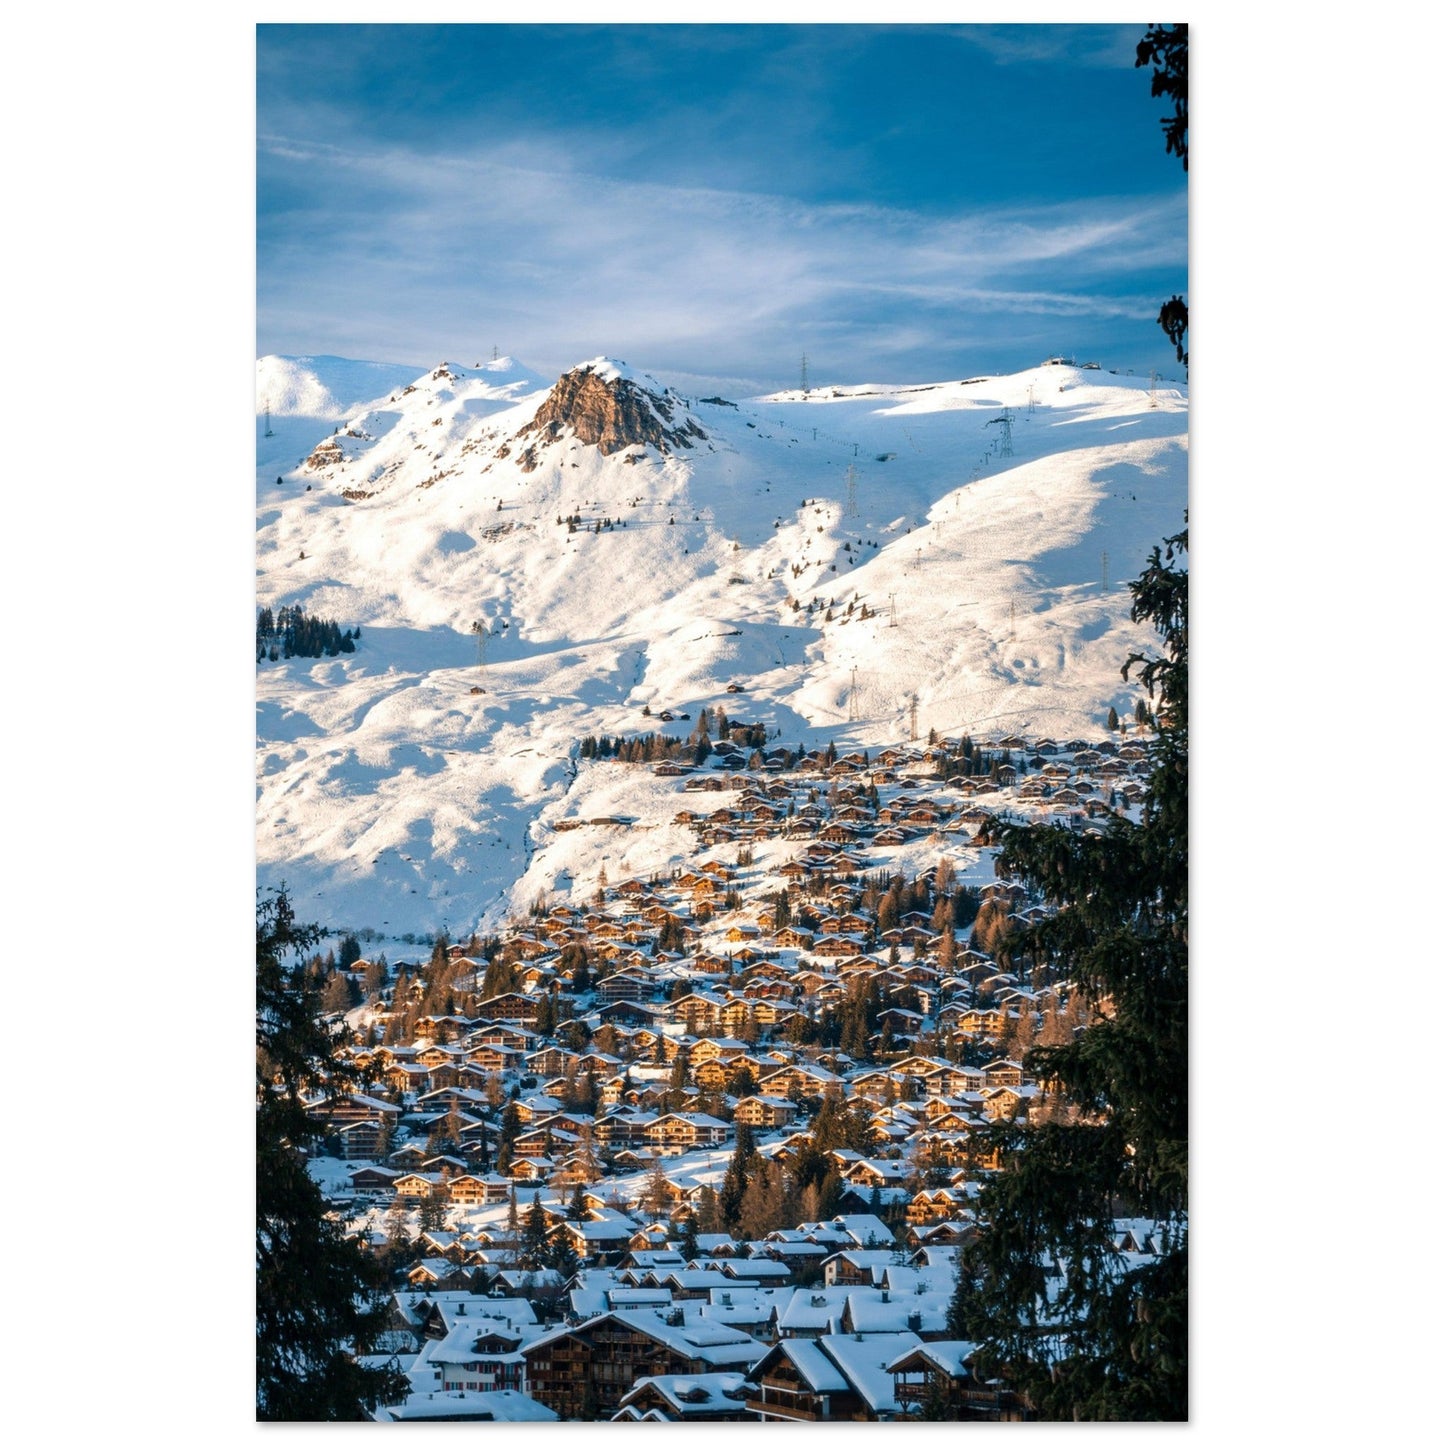 Photo du domaine skiable de Verbier en hiver, Suisse #1 - Tableau photo alu montagne